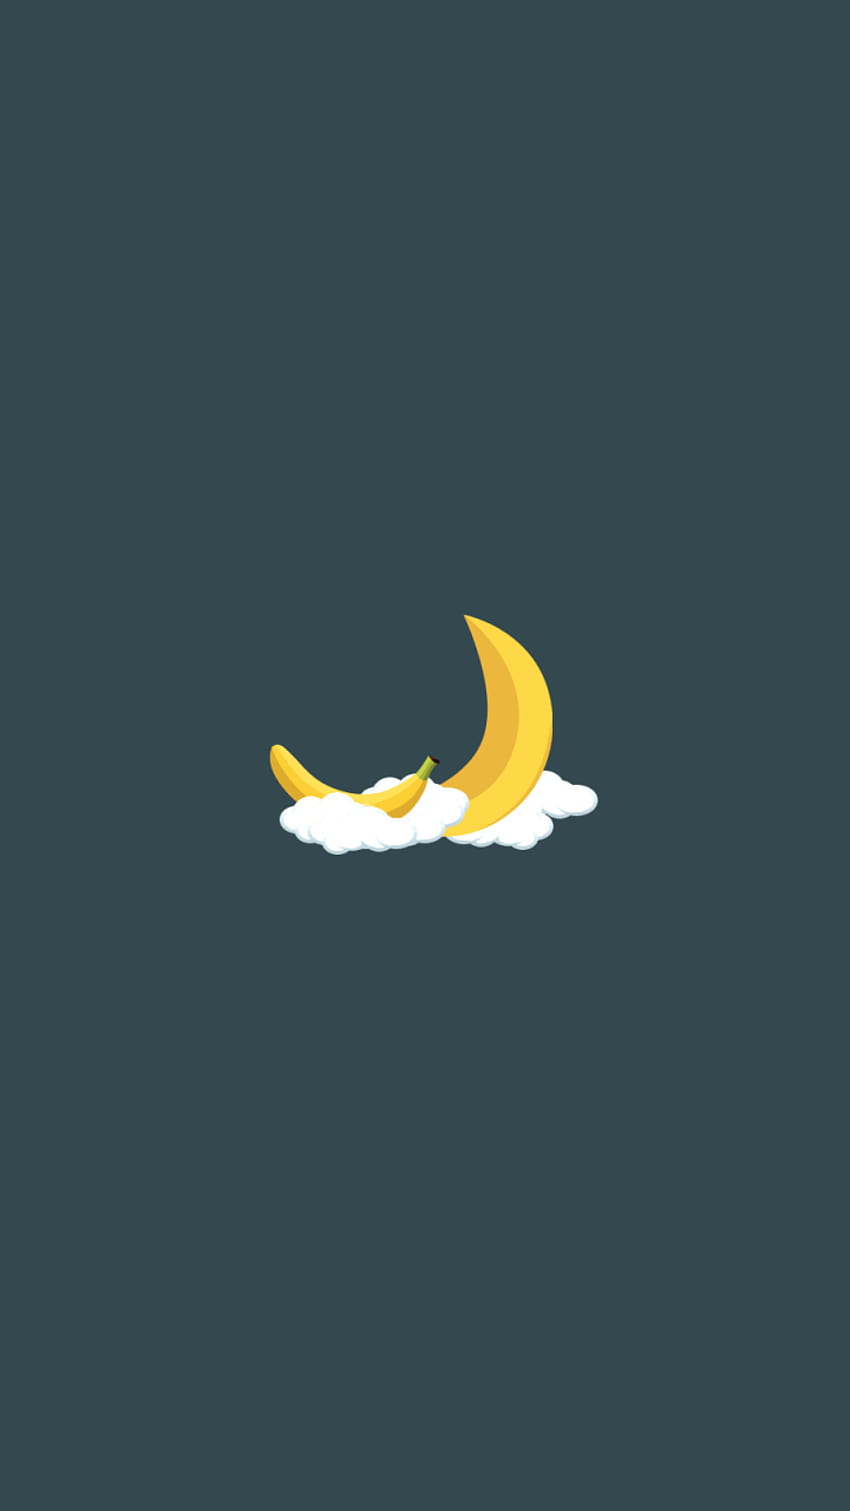 Plátano, luna, nubes, mínimo, 720x1280, kpop minimalista fondo de pantalla del teléfono